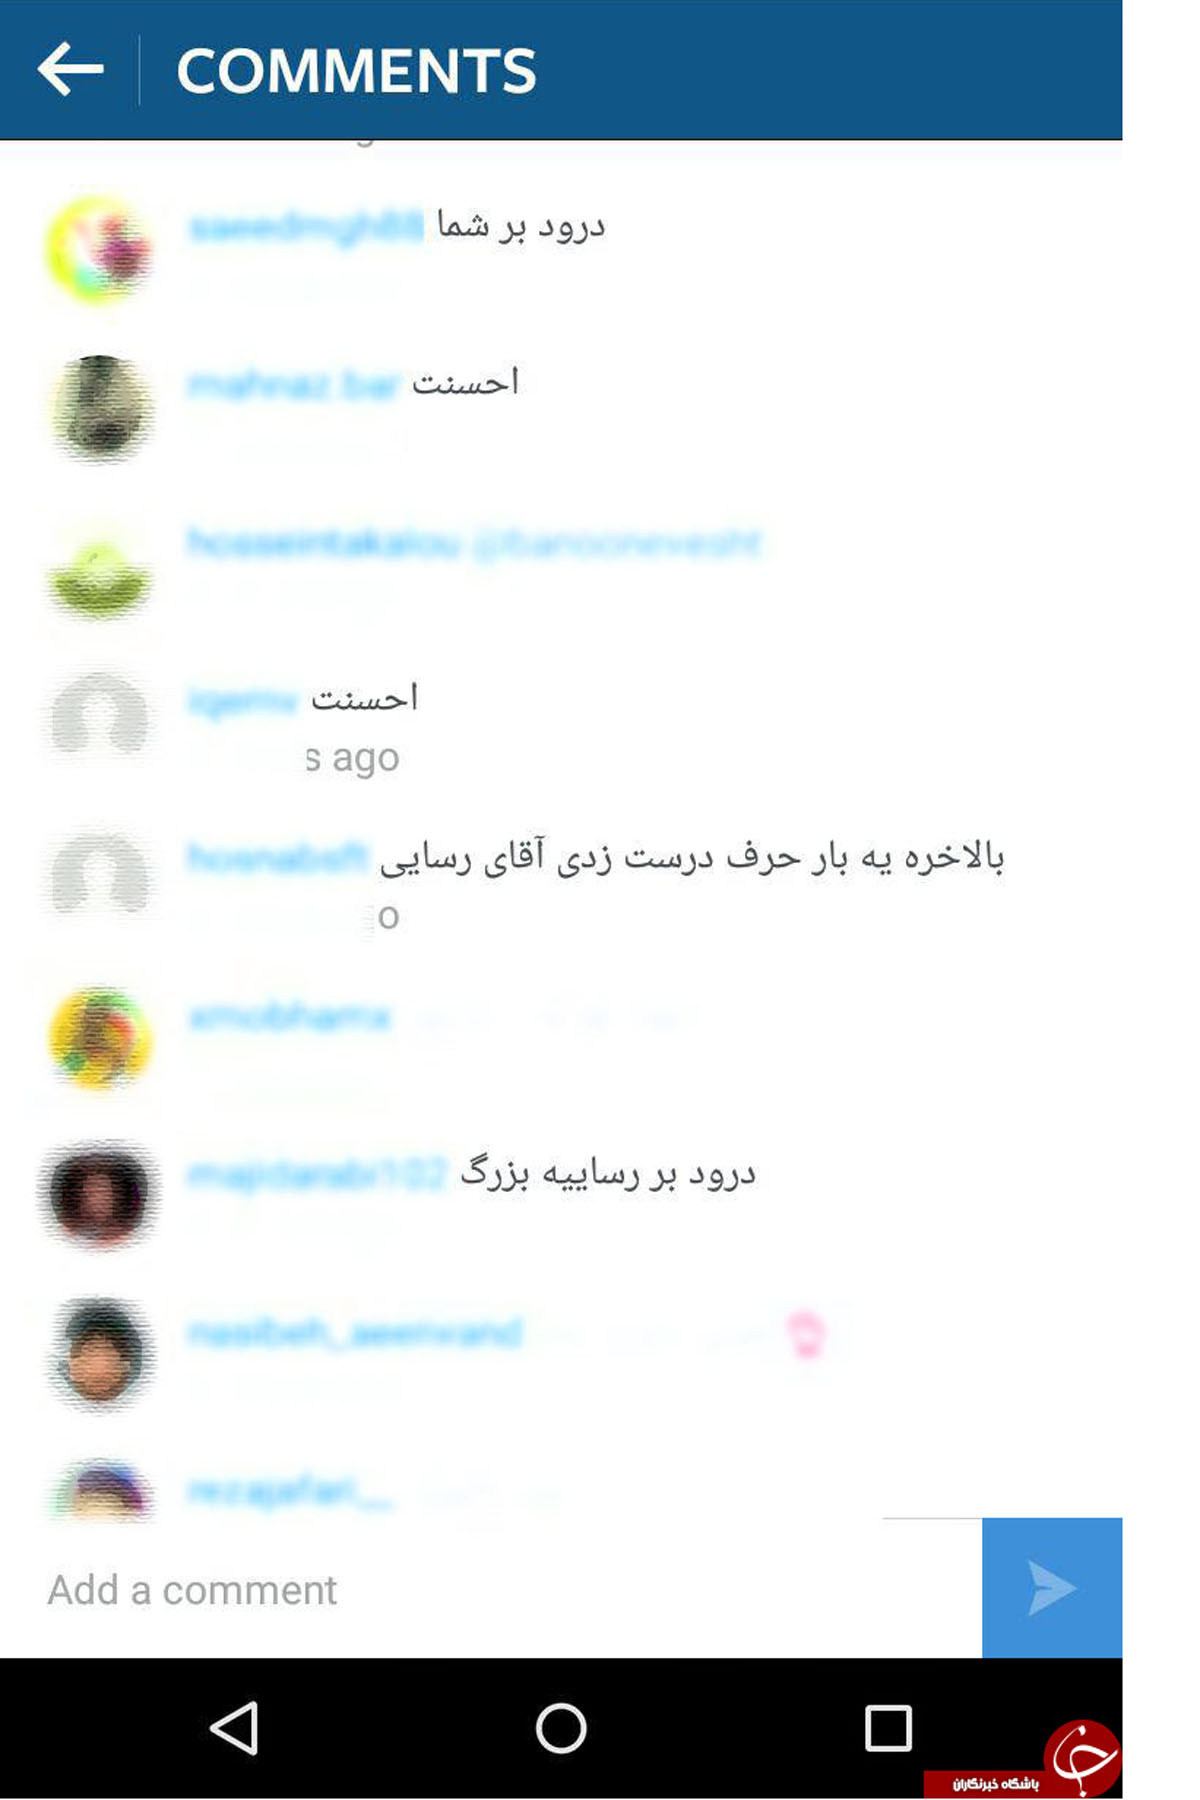 اعتراف جالب نماینده مجلس در صفحه اینستاگرامش